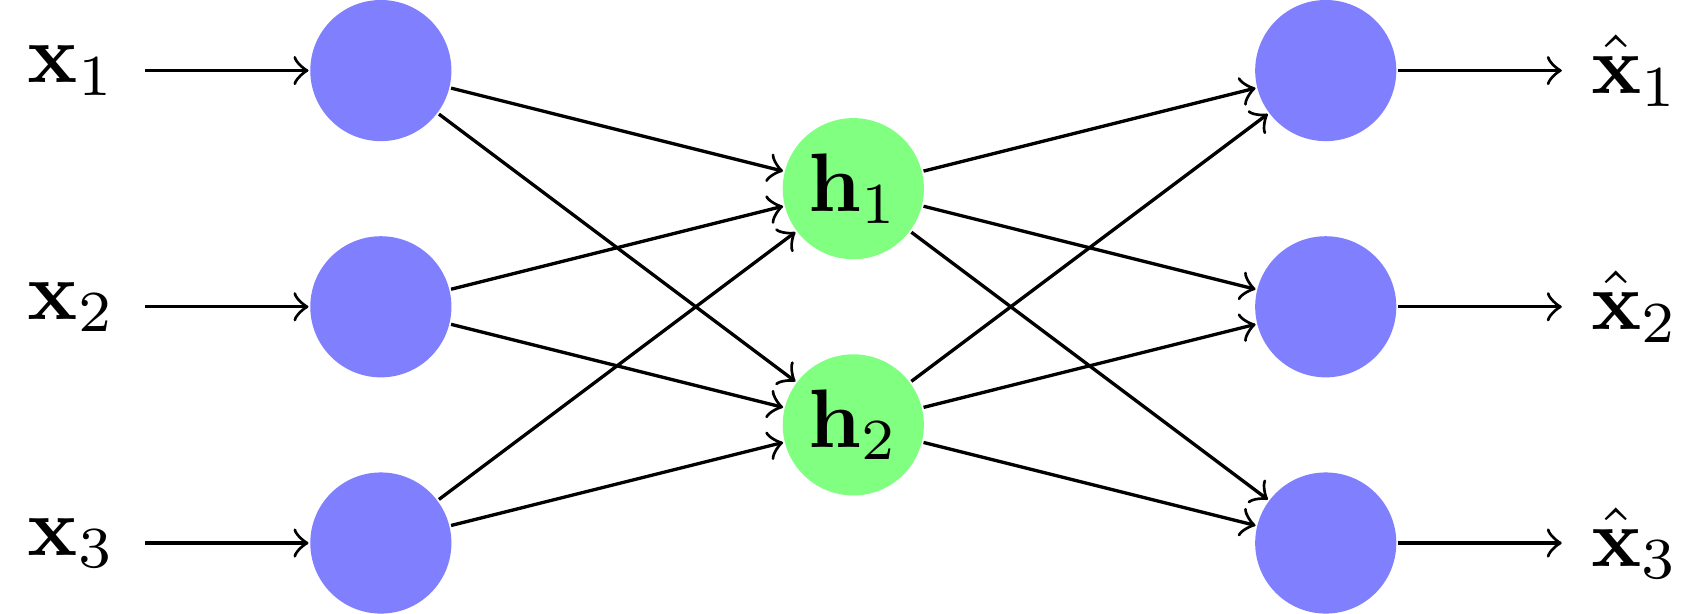 Un exemple de réseau under-complete